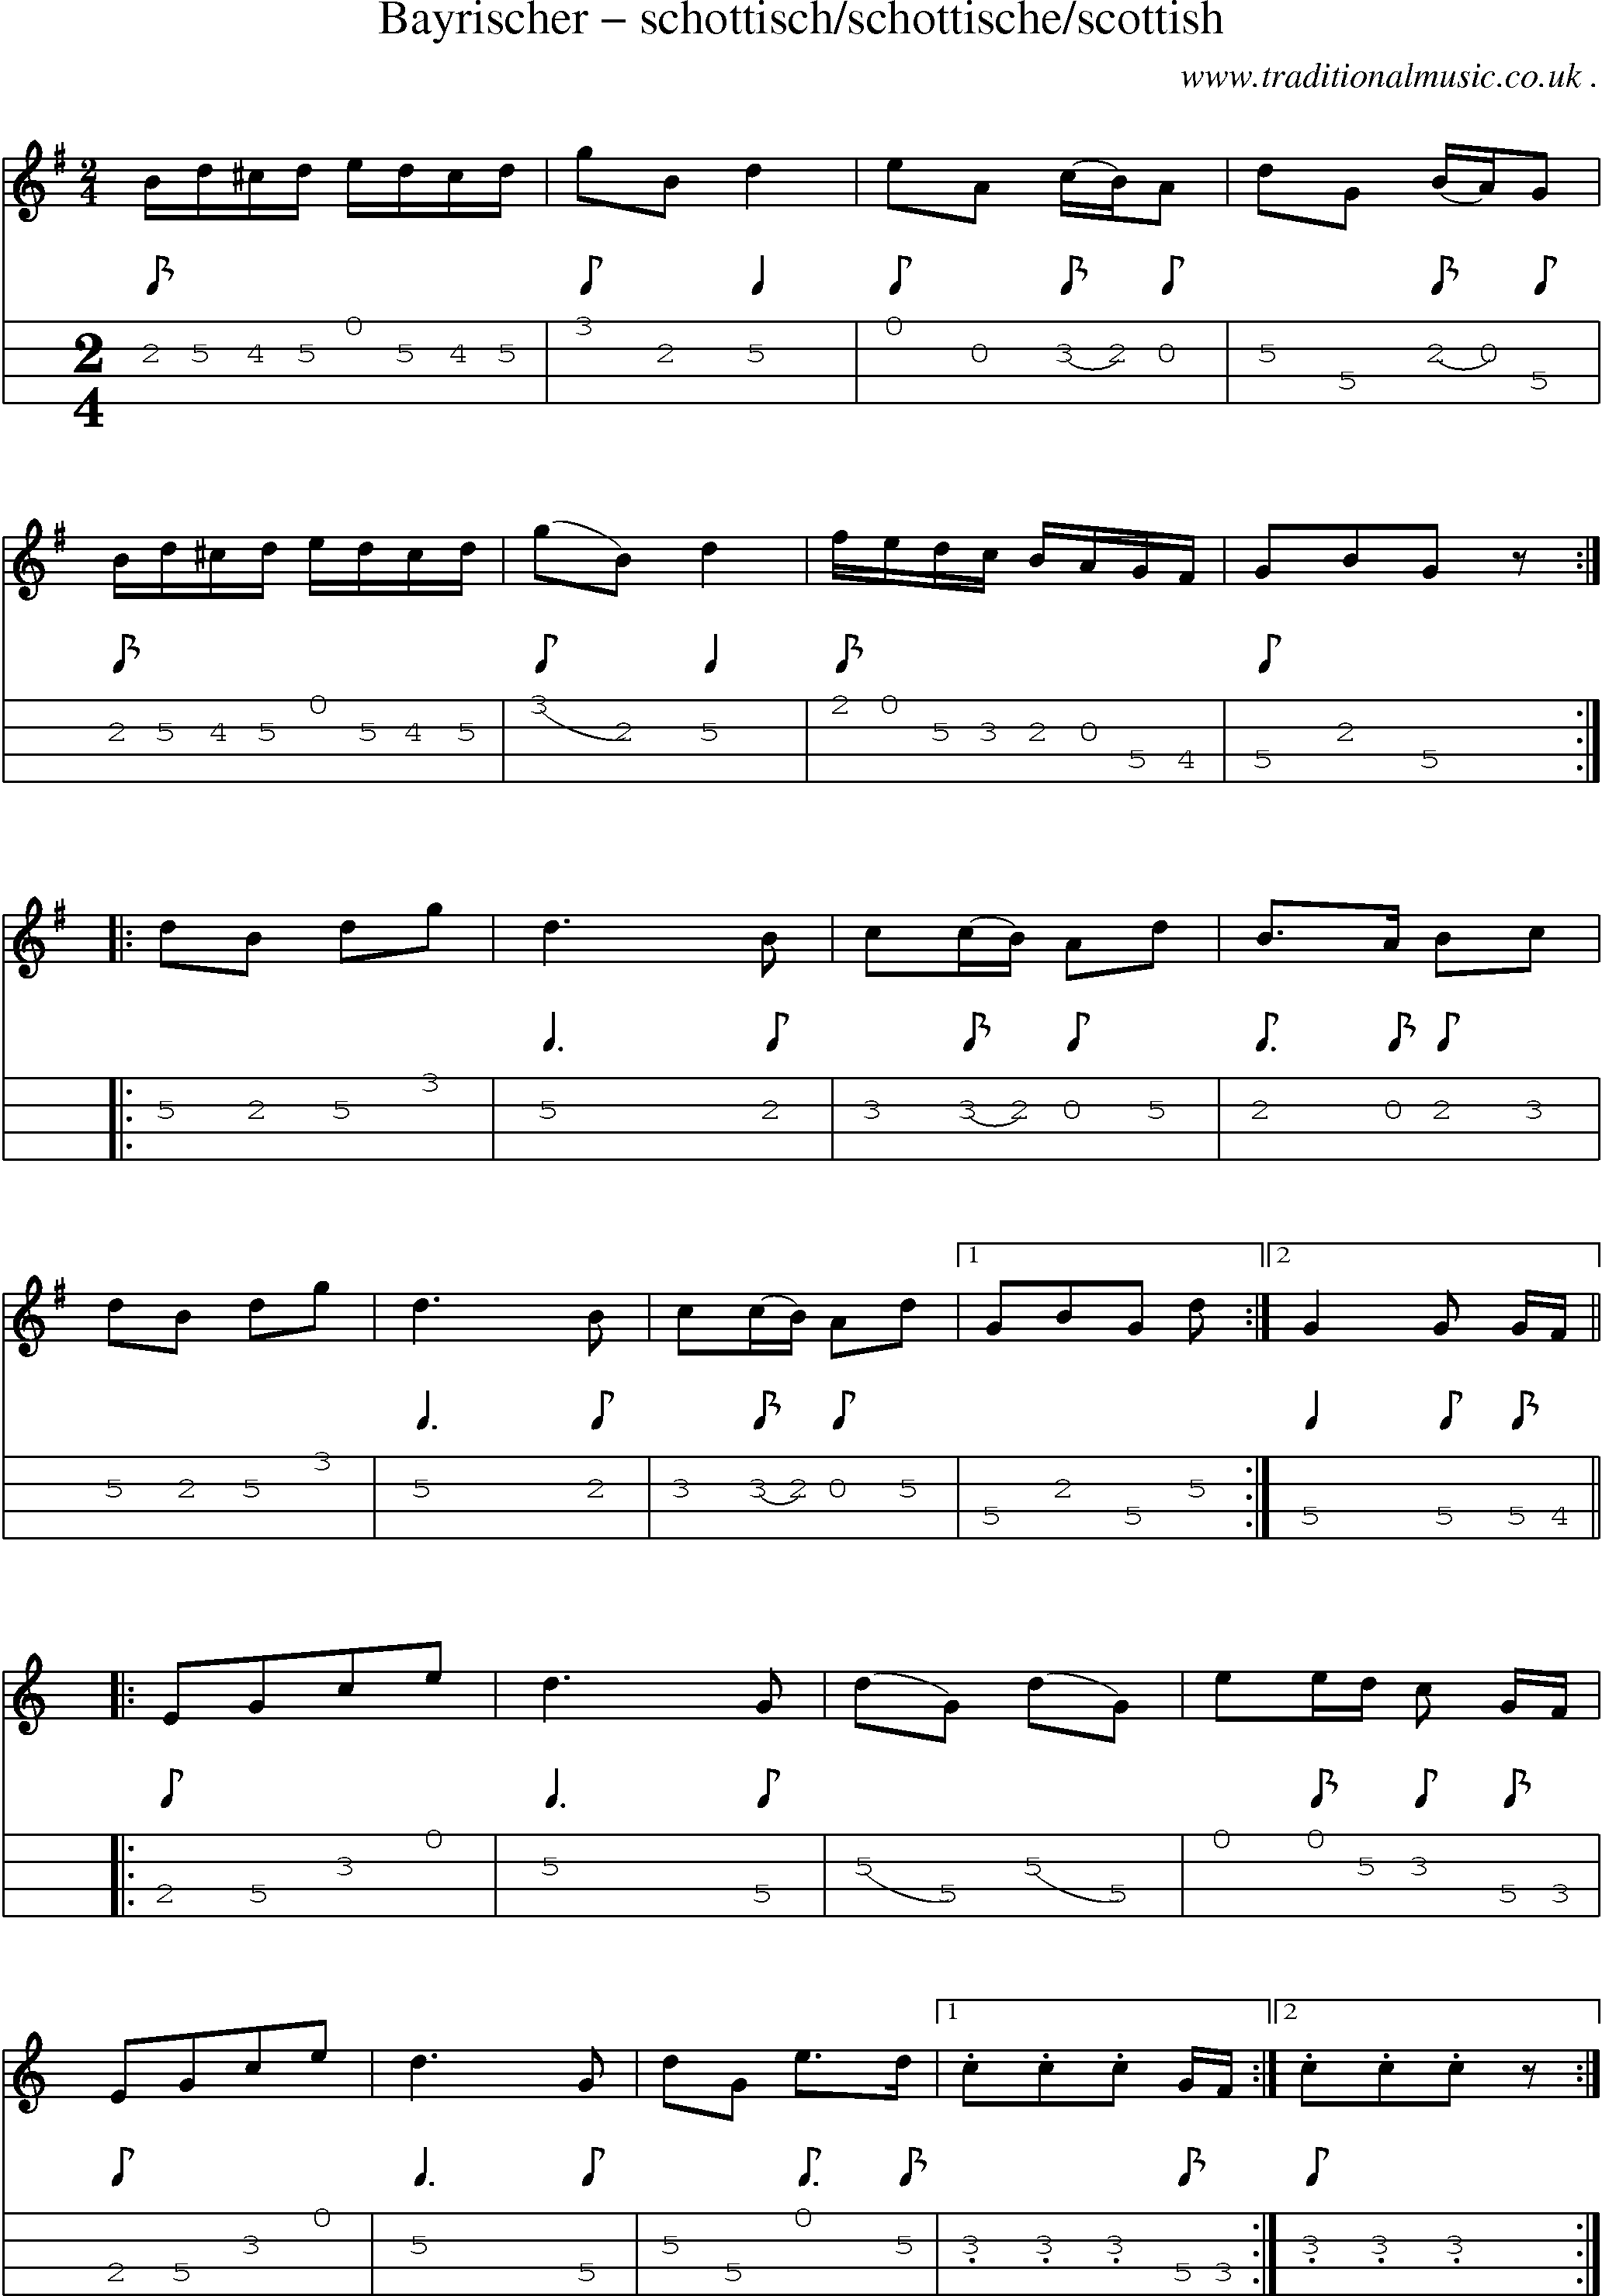 Sheet-Music and Mandolin Tabs for Bayrischer Schottisch